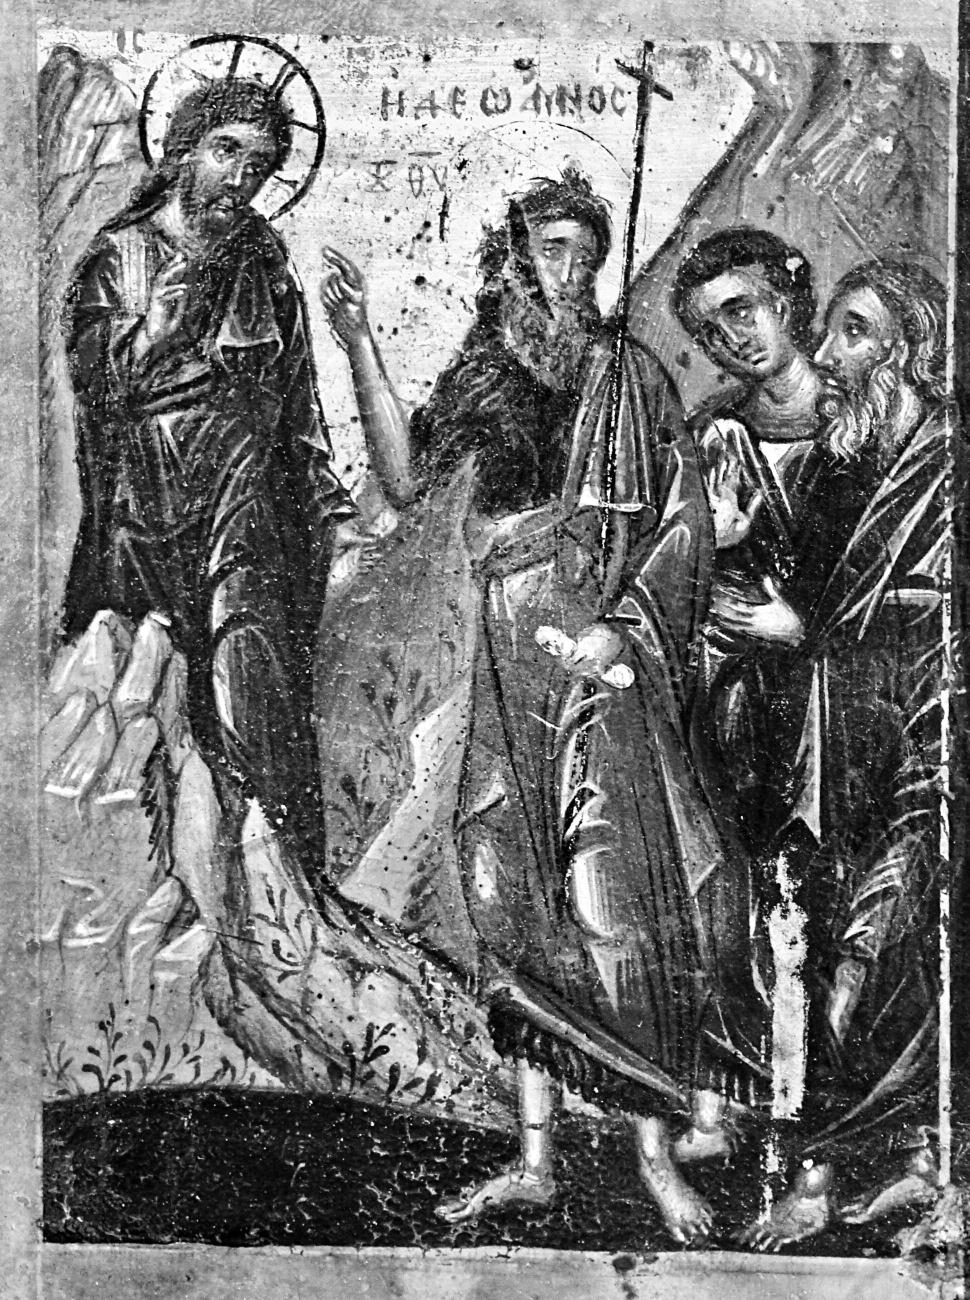 11) υιοθετείται σπάνια παραλλαγή με τον Χριστό πίσω από βράχο, με αναλογίες στην εικόνα της μονής Λουκούς43.